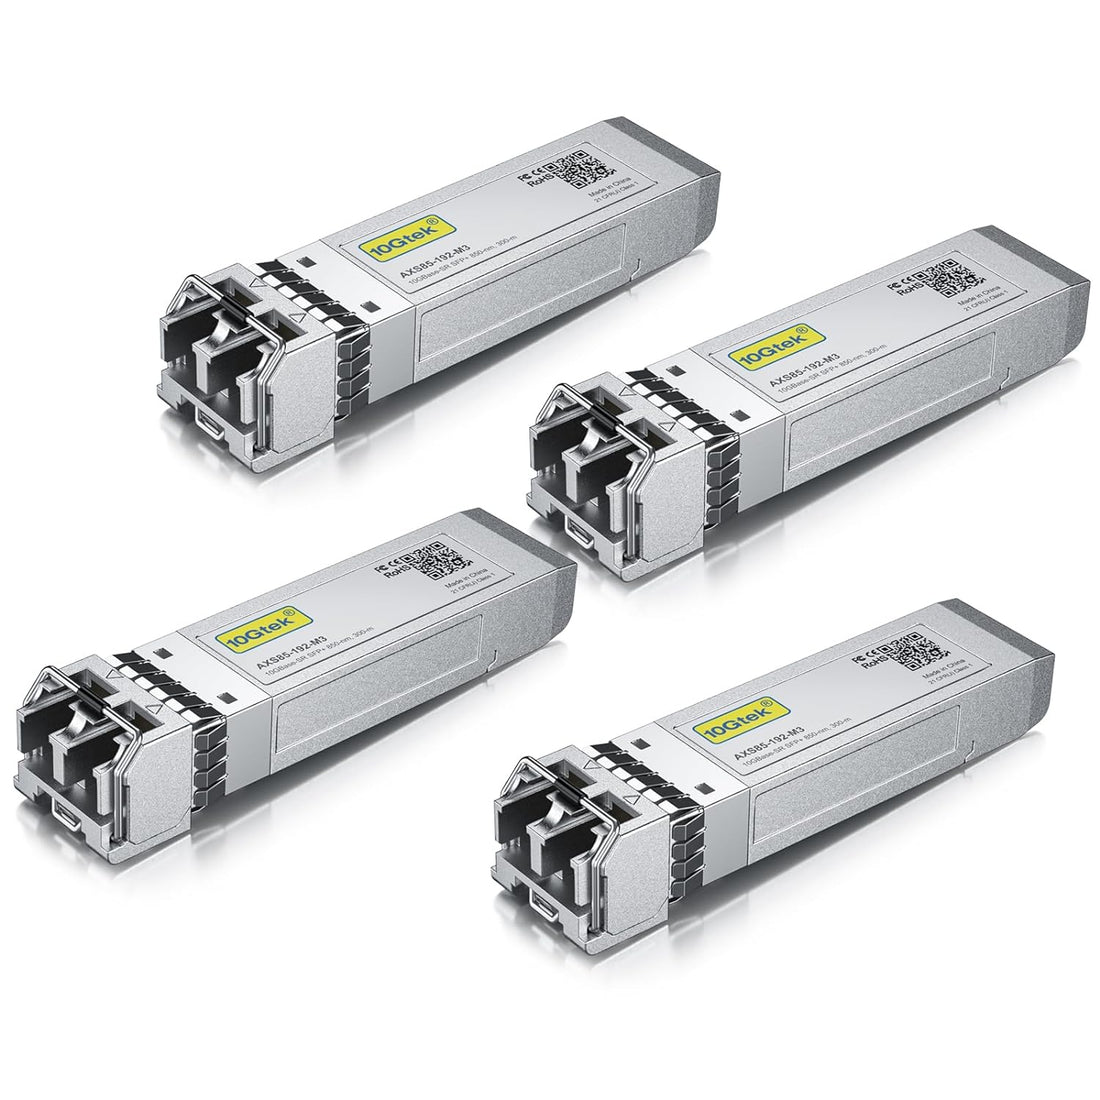 10Gtek for Cisco SFP-10G-SR, 10Gb/s SFP+ Transceiver Module,10GBASE-SR, MMF, 850nm, 300-meter, Pack of 4